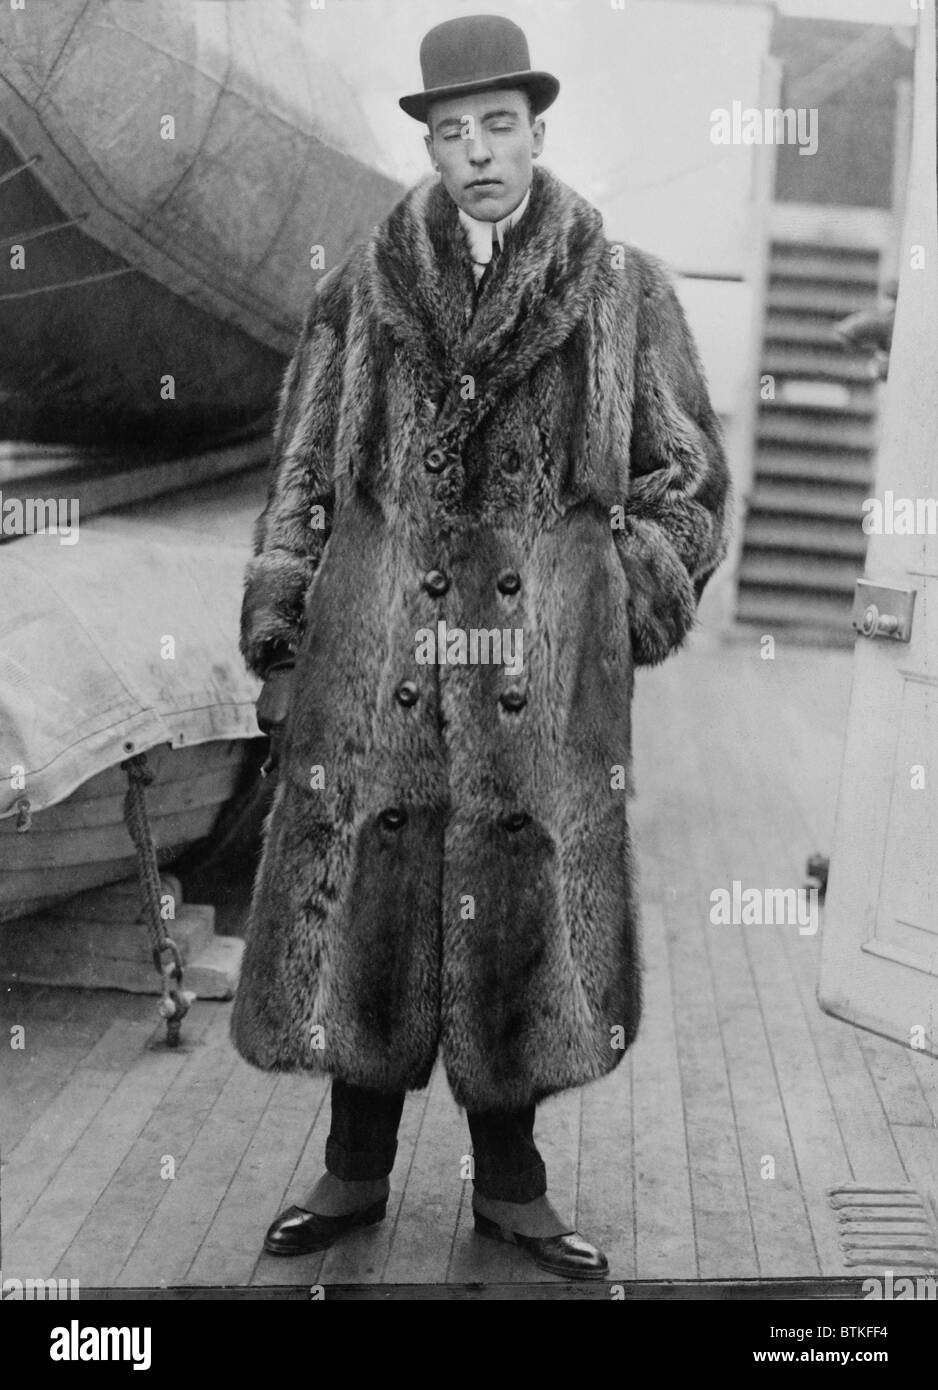 Vincent Astor (1891-1959), sur le pont du navire portant manteau de fourrure. Après son père, John Jacob Astor IV, est décédé dans la catastrophe Titantic, Vincent a assumé un rôle de leadership dans la famille Astor. Ca. 1920. Banque D'Images